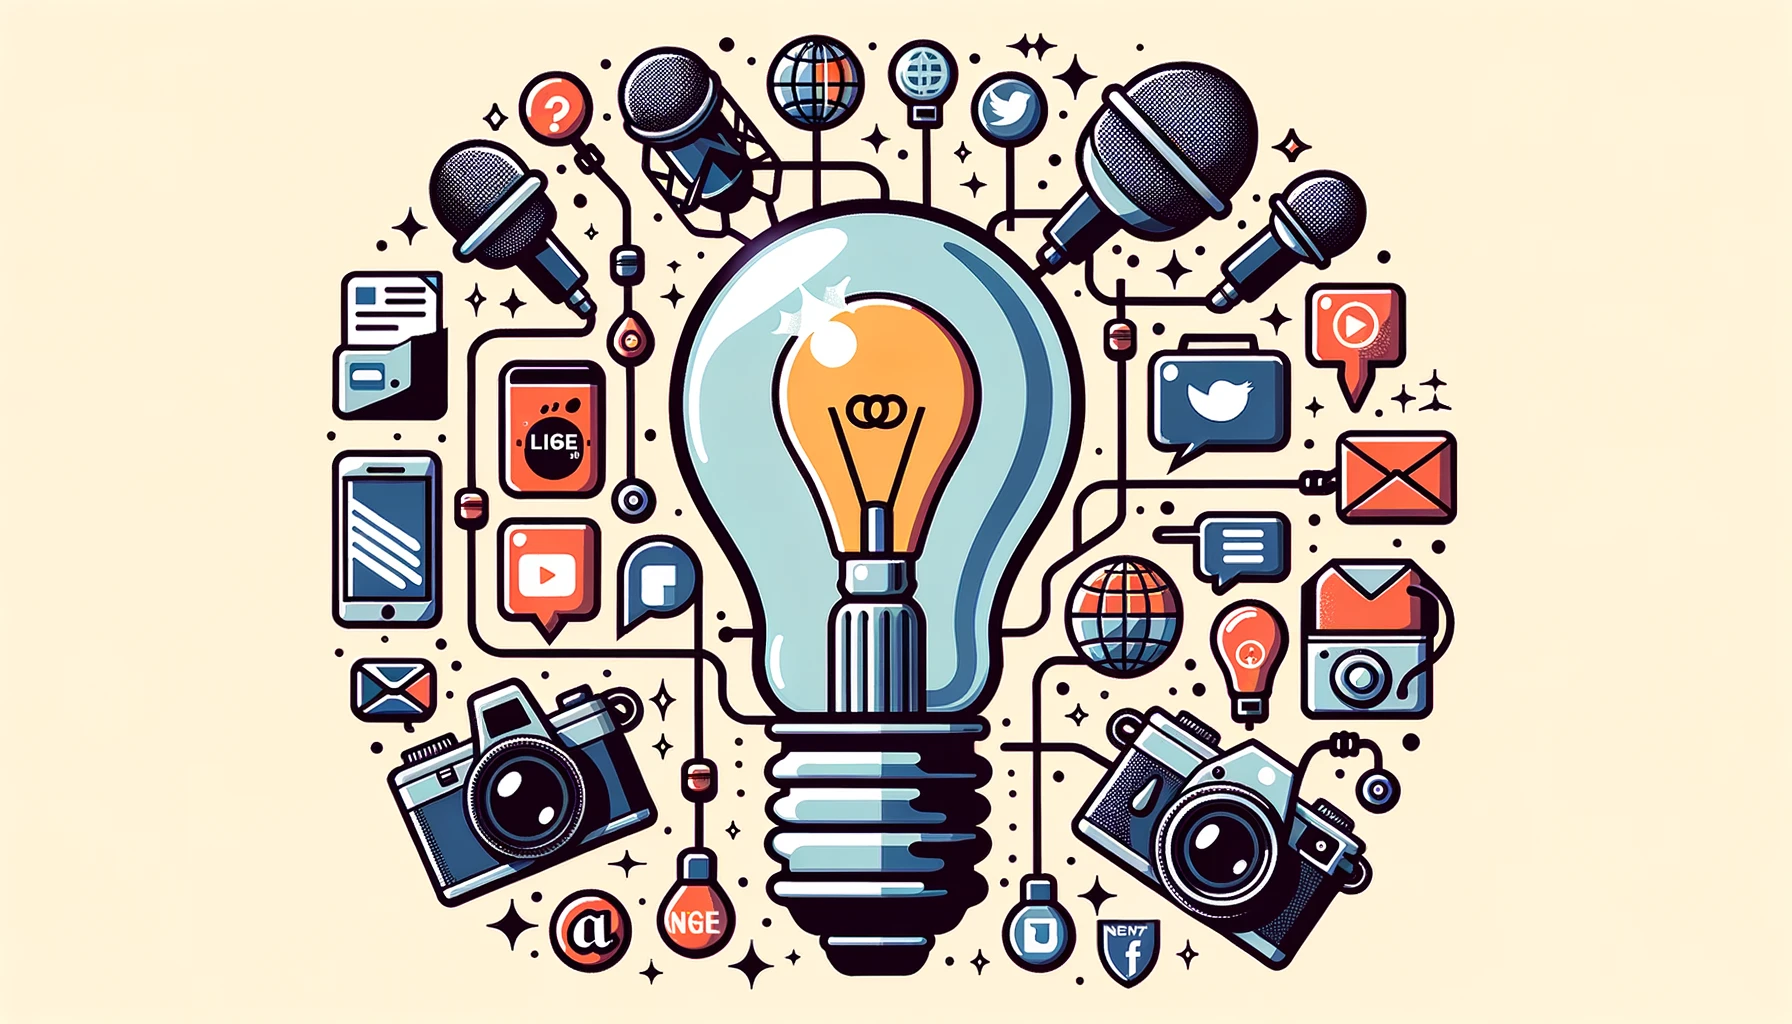 icônes de médias sociaux, un microphone, une caméra et des liens web, avec une ampoule lumineuse au centre symbolisant l'intégration du digital et du traditionnel dans une stratégie marketing